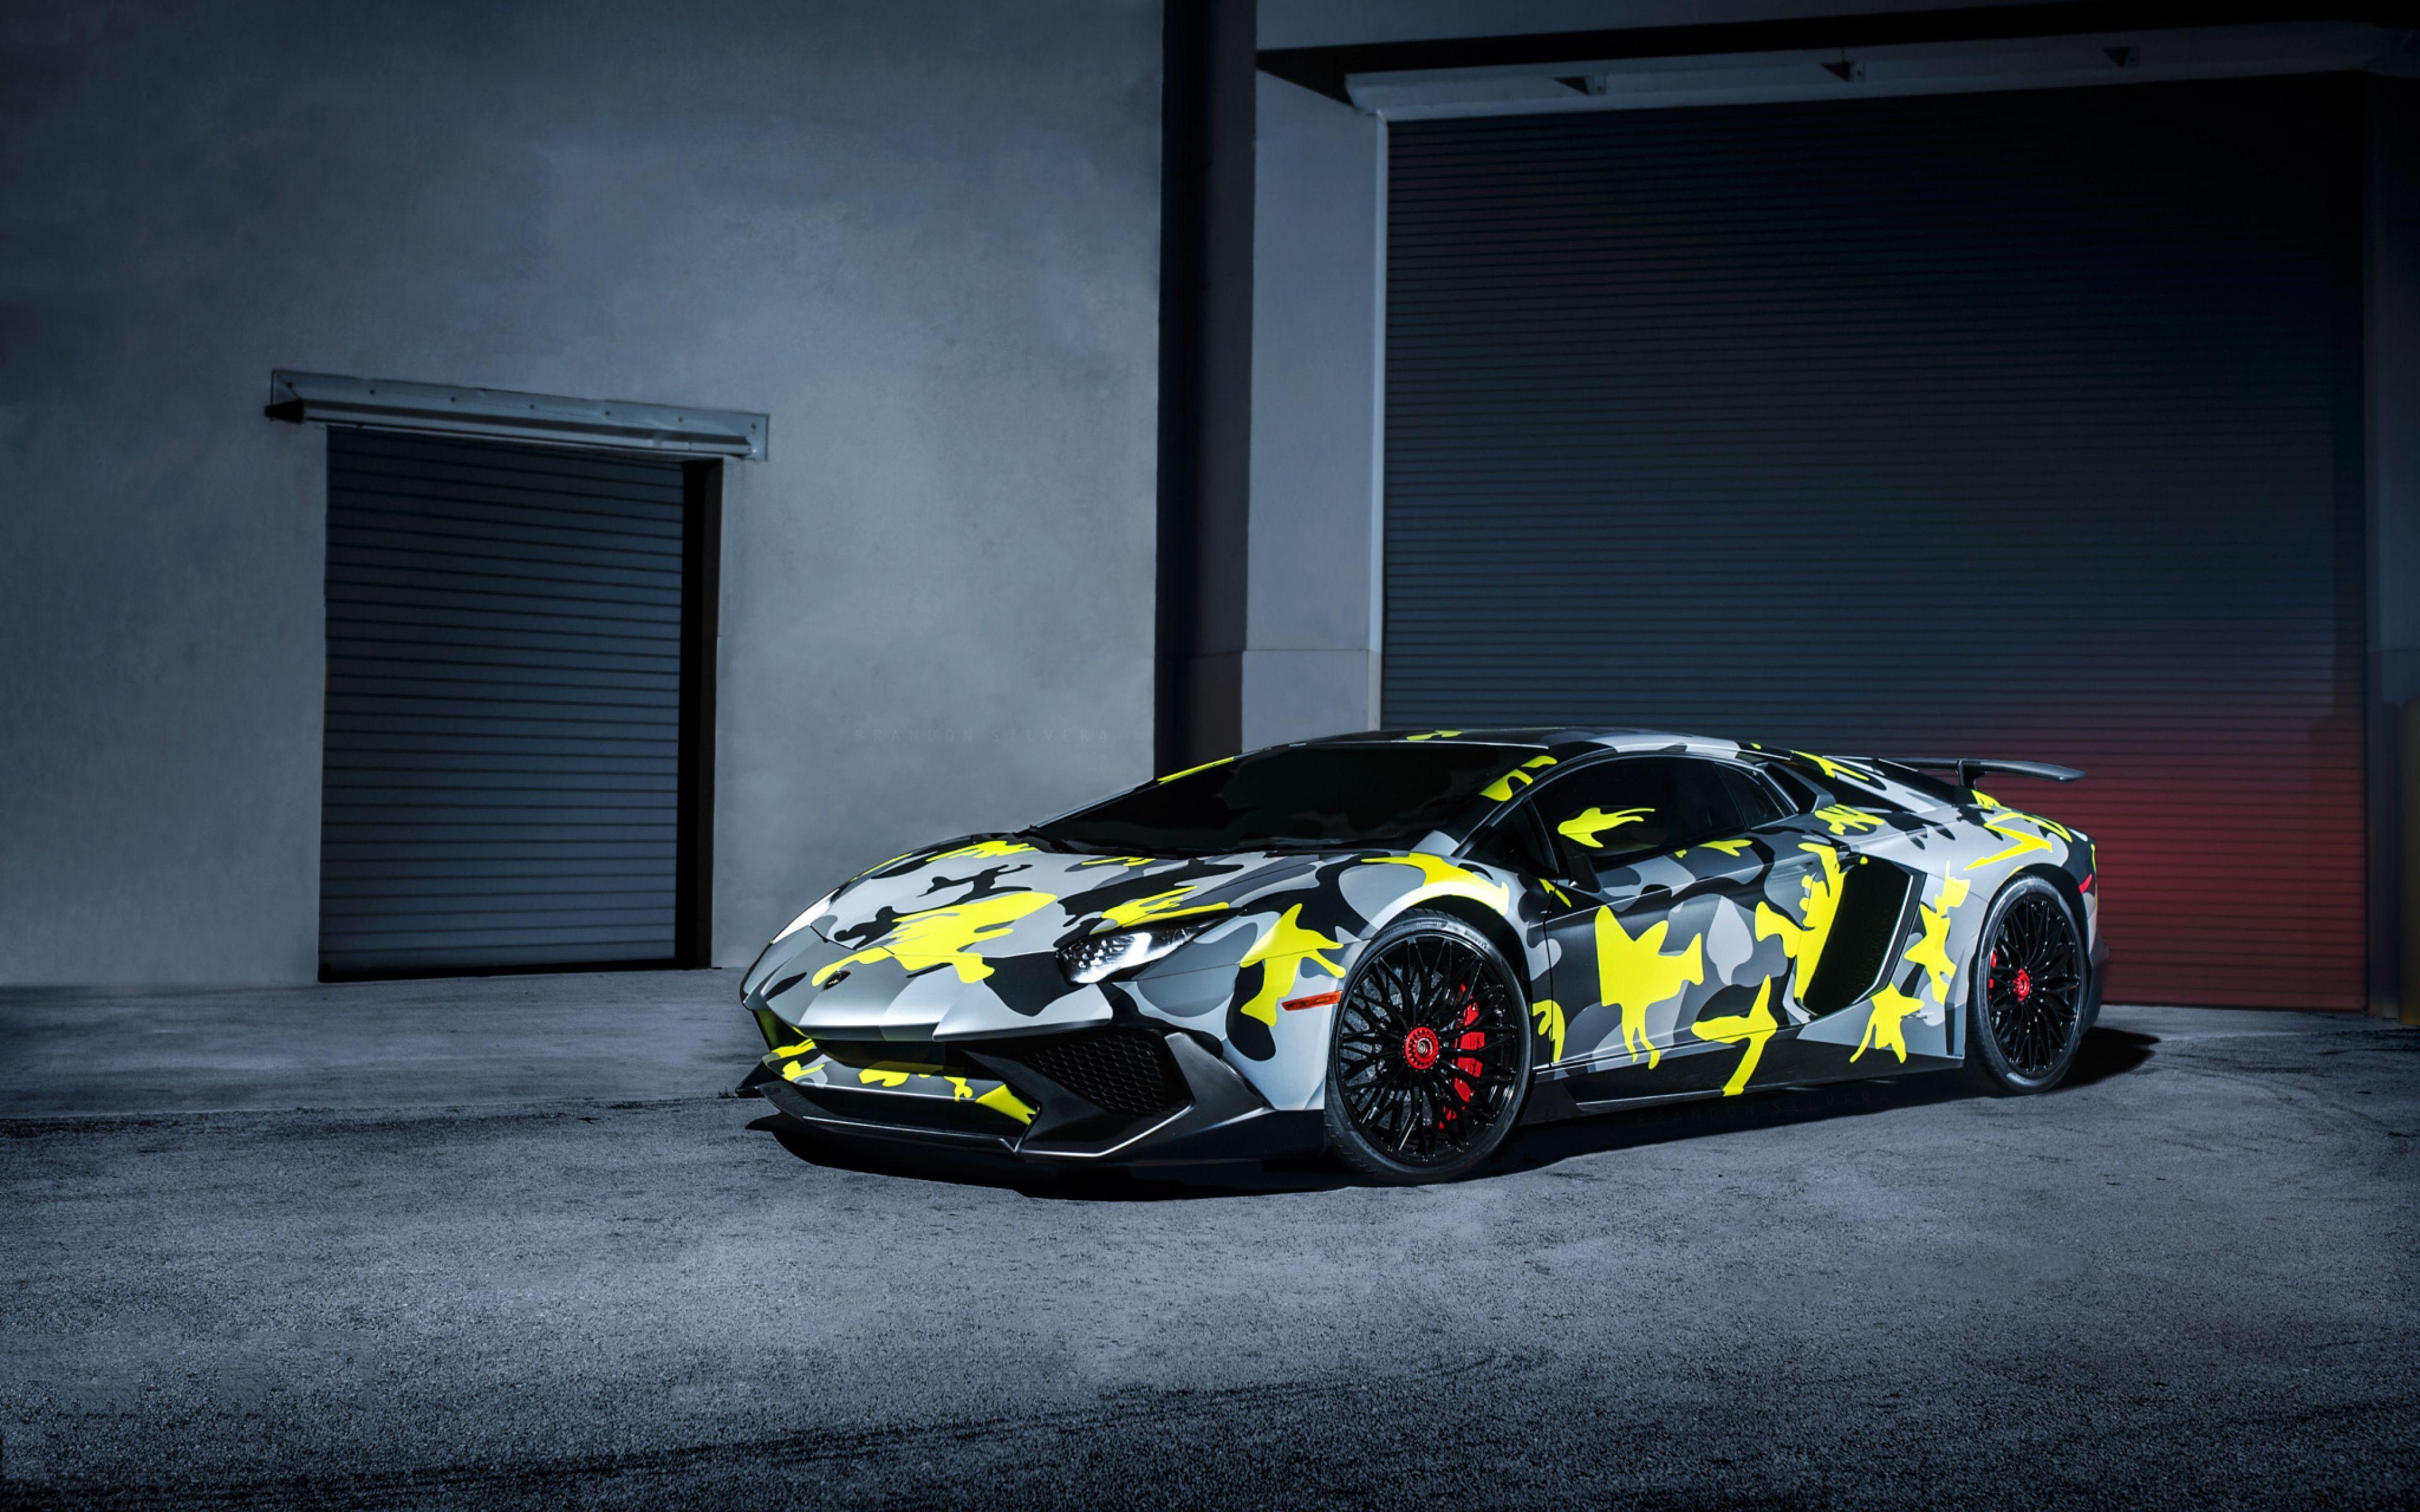 Lamborghini Wallpaper HD. Lamborghini aventador wallpaper, Sports cars luxury, Lamborghini cars